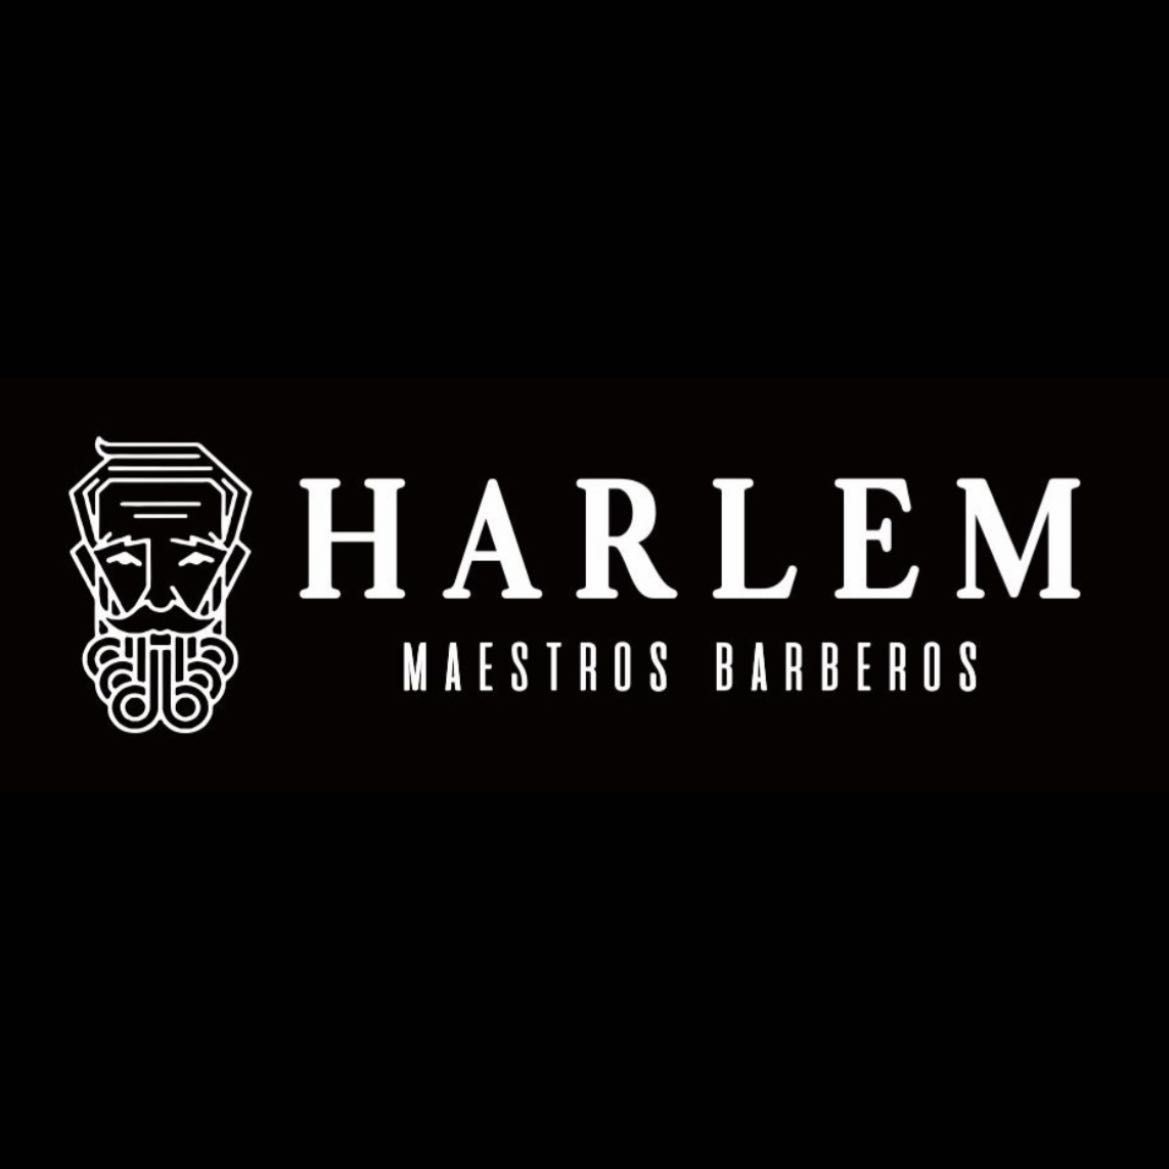 Harlem Maestros Barberos, Av. de Brasil, 19, 28020, Madrid